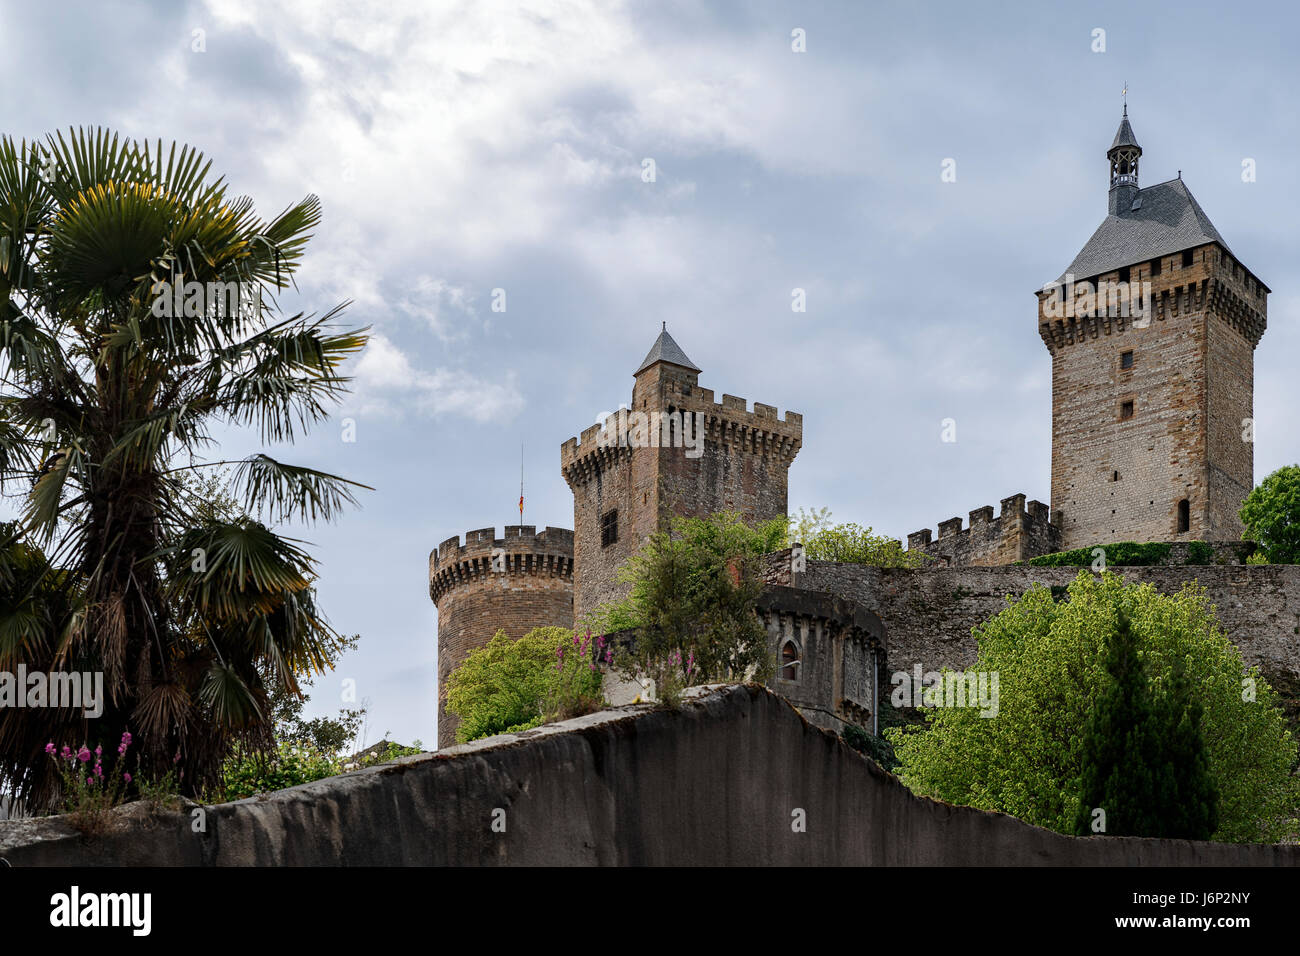 Château français, le château de Foix, Ariège, France, Europe Banque D'Images